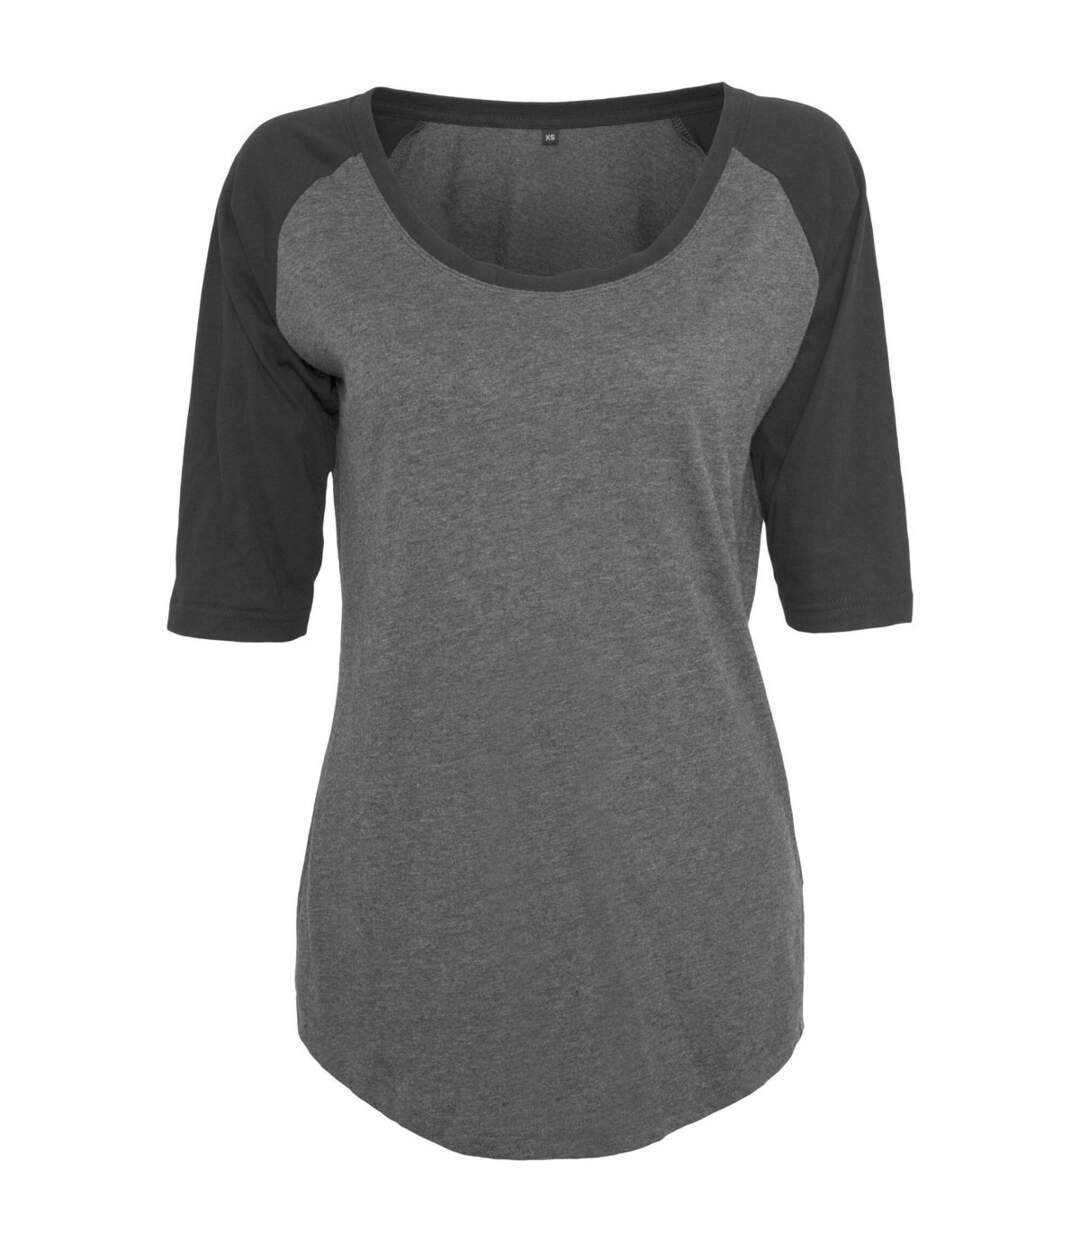 T-shirt bicolore pour femme - BY022 - gris foncé